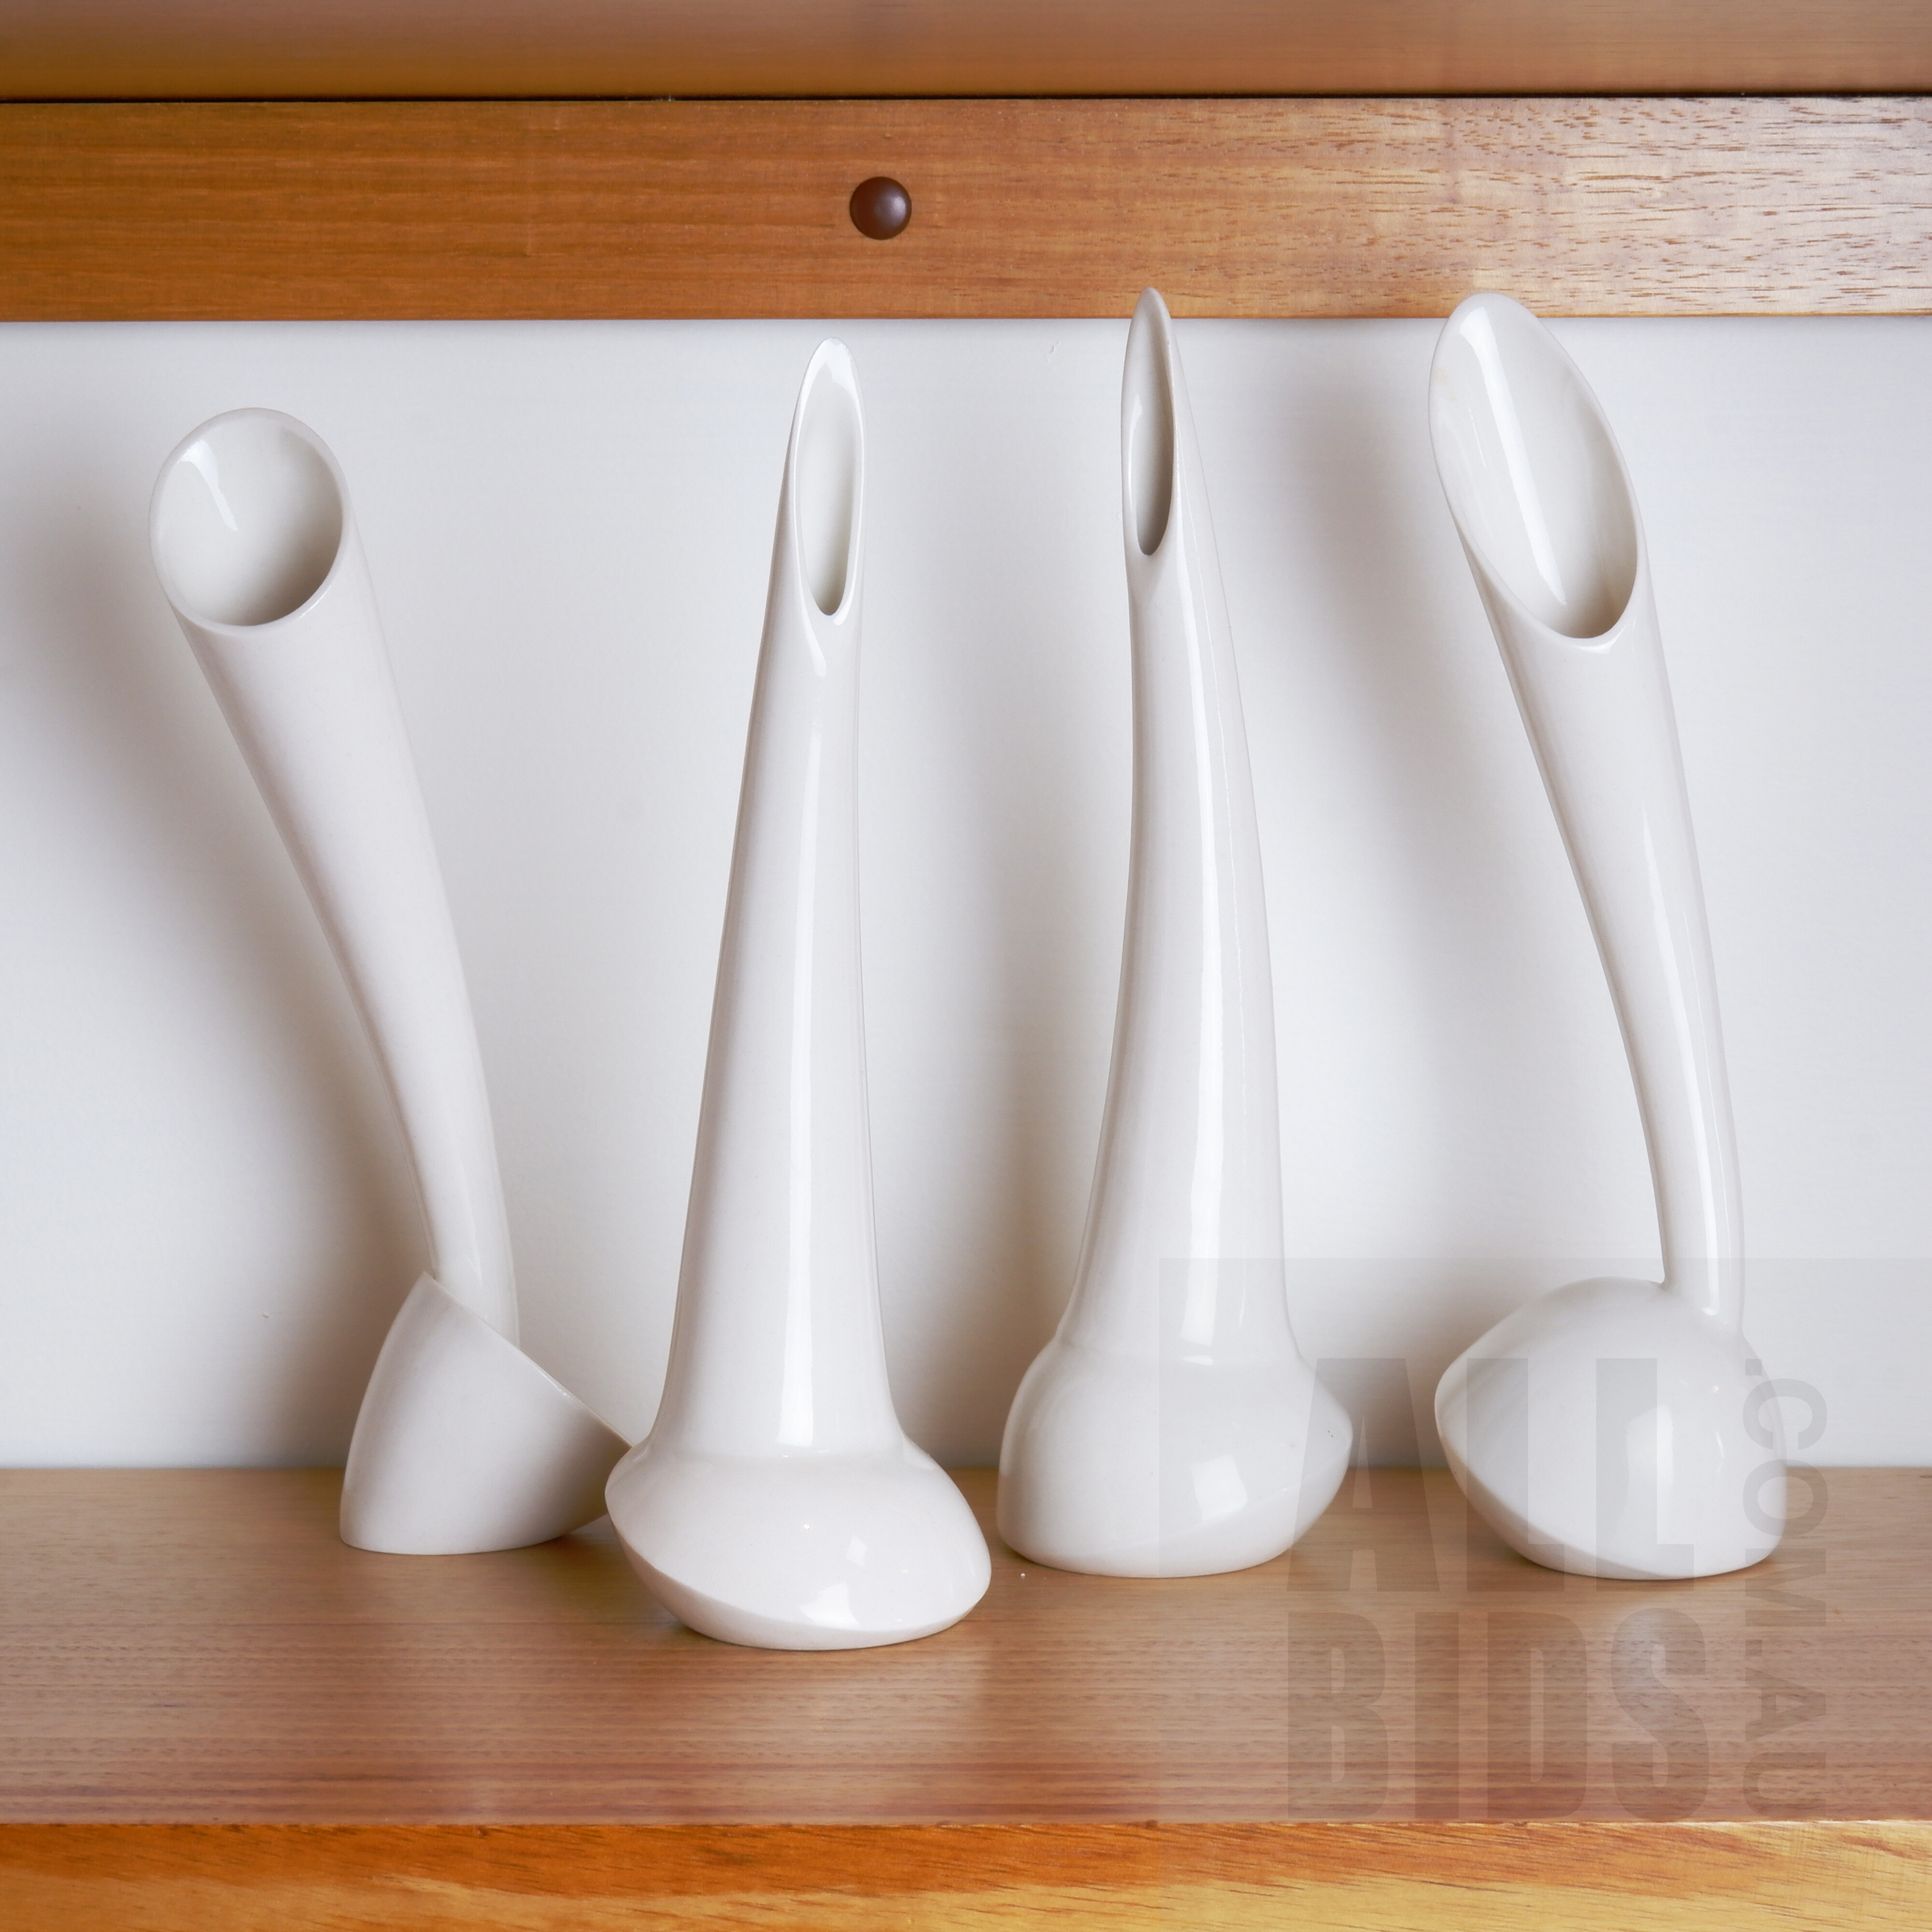 'Four Studio Ceramic Stem Vases'